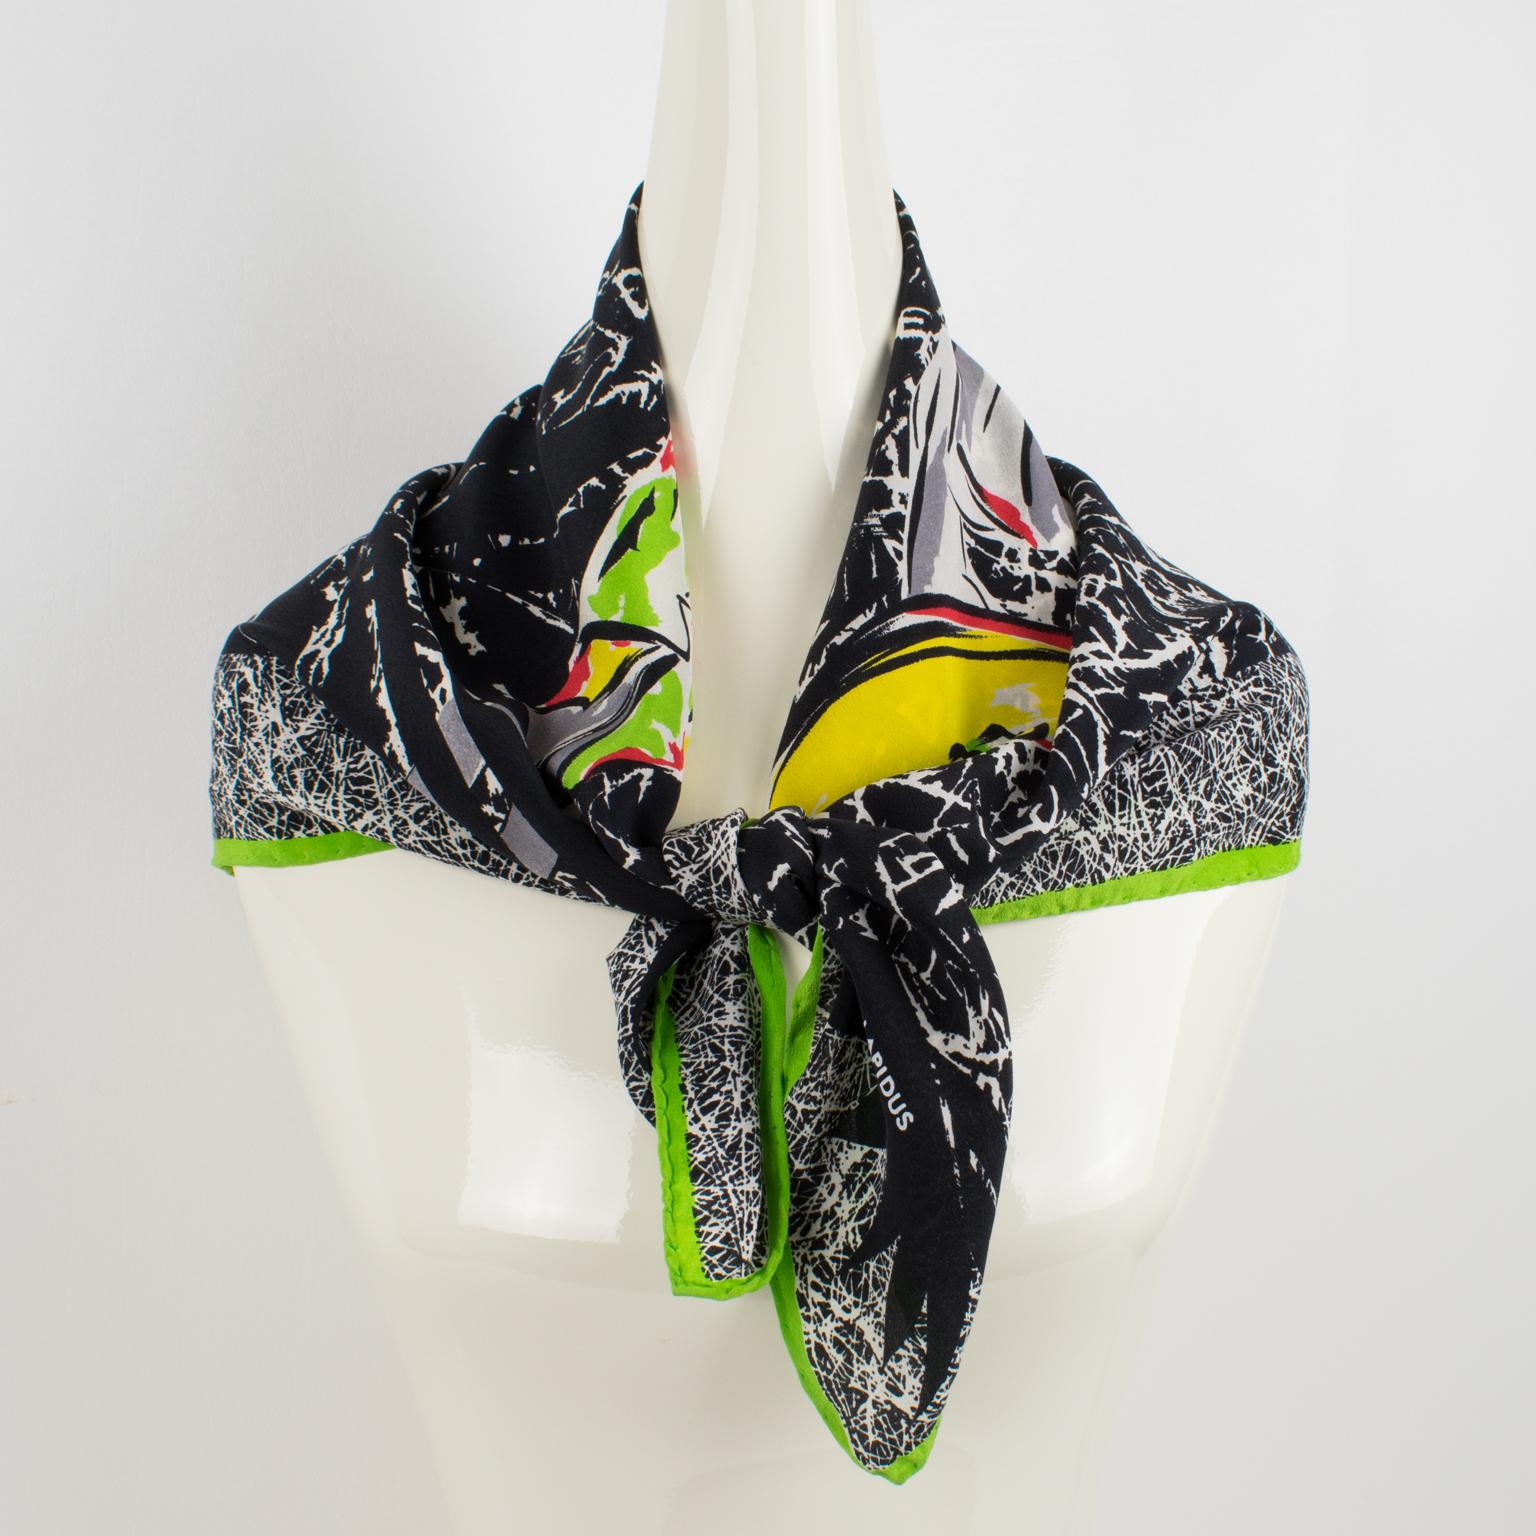 Cette élégante écharpe en soie Ted Lapidus Paris présente deux mannequins élégants imprimés dans une combinaison assortie de tons multicolores sur un fond noir et blanc à motif hautement texturé avec une bordure vert avocat. La pièce est marquée du